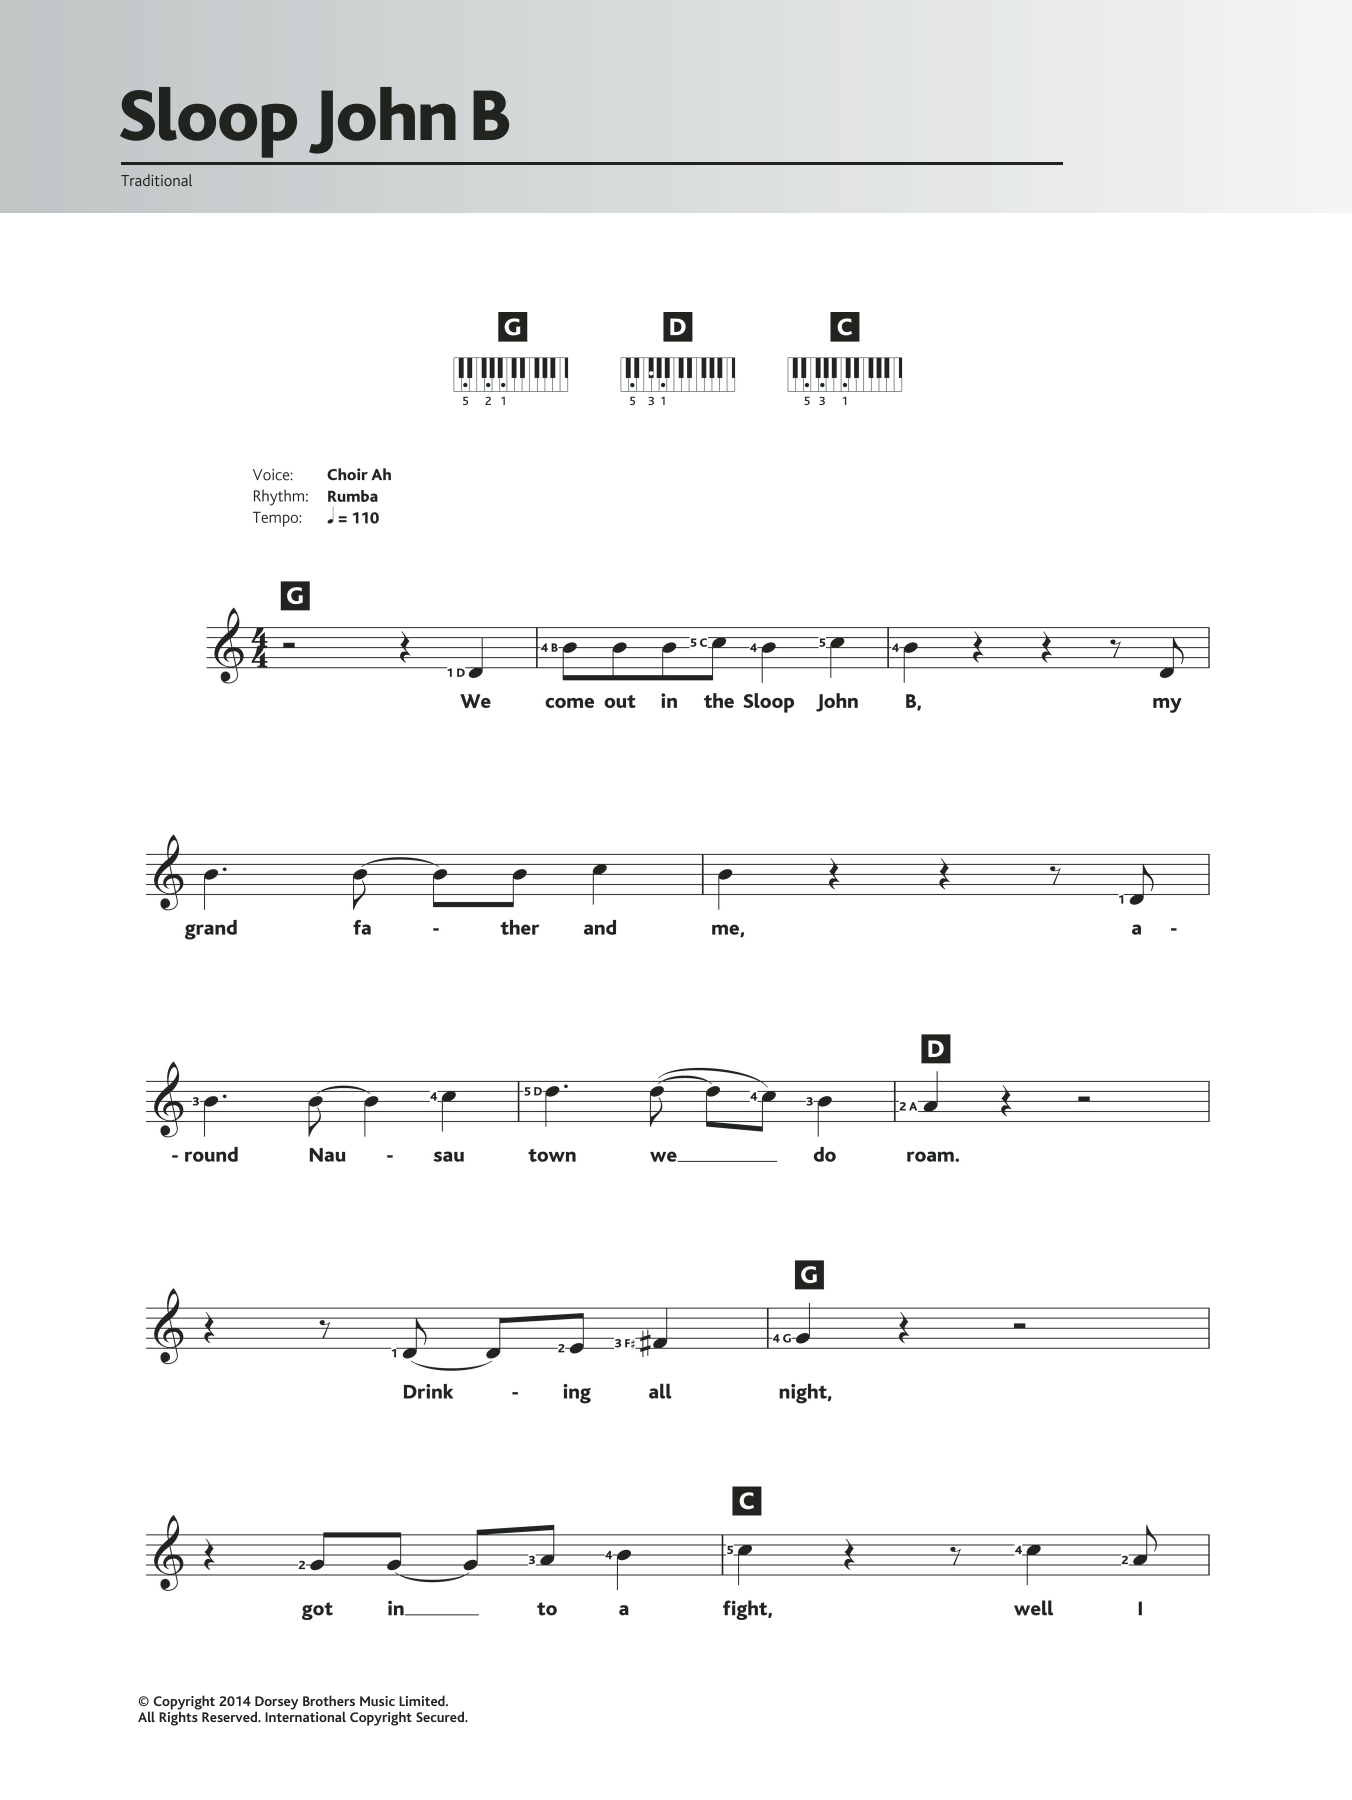 Traditional Sloop John B sheet music notes and chords arranged for Ukulele Chords/Lyrics